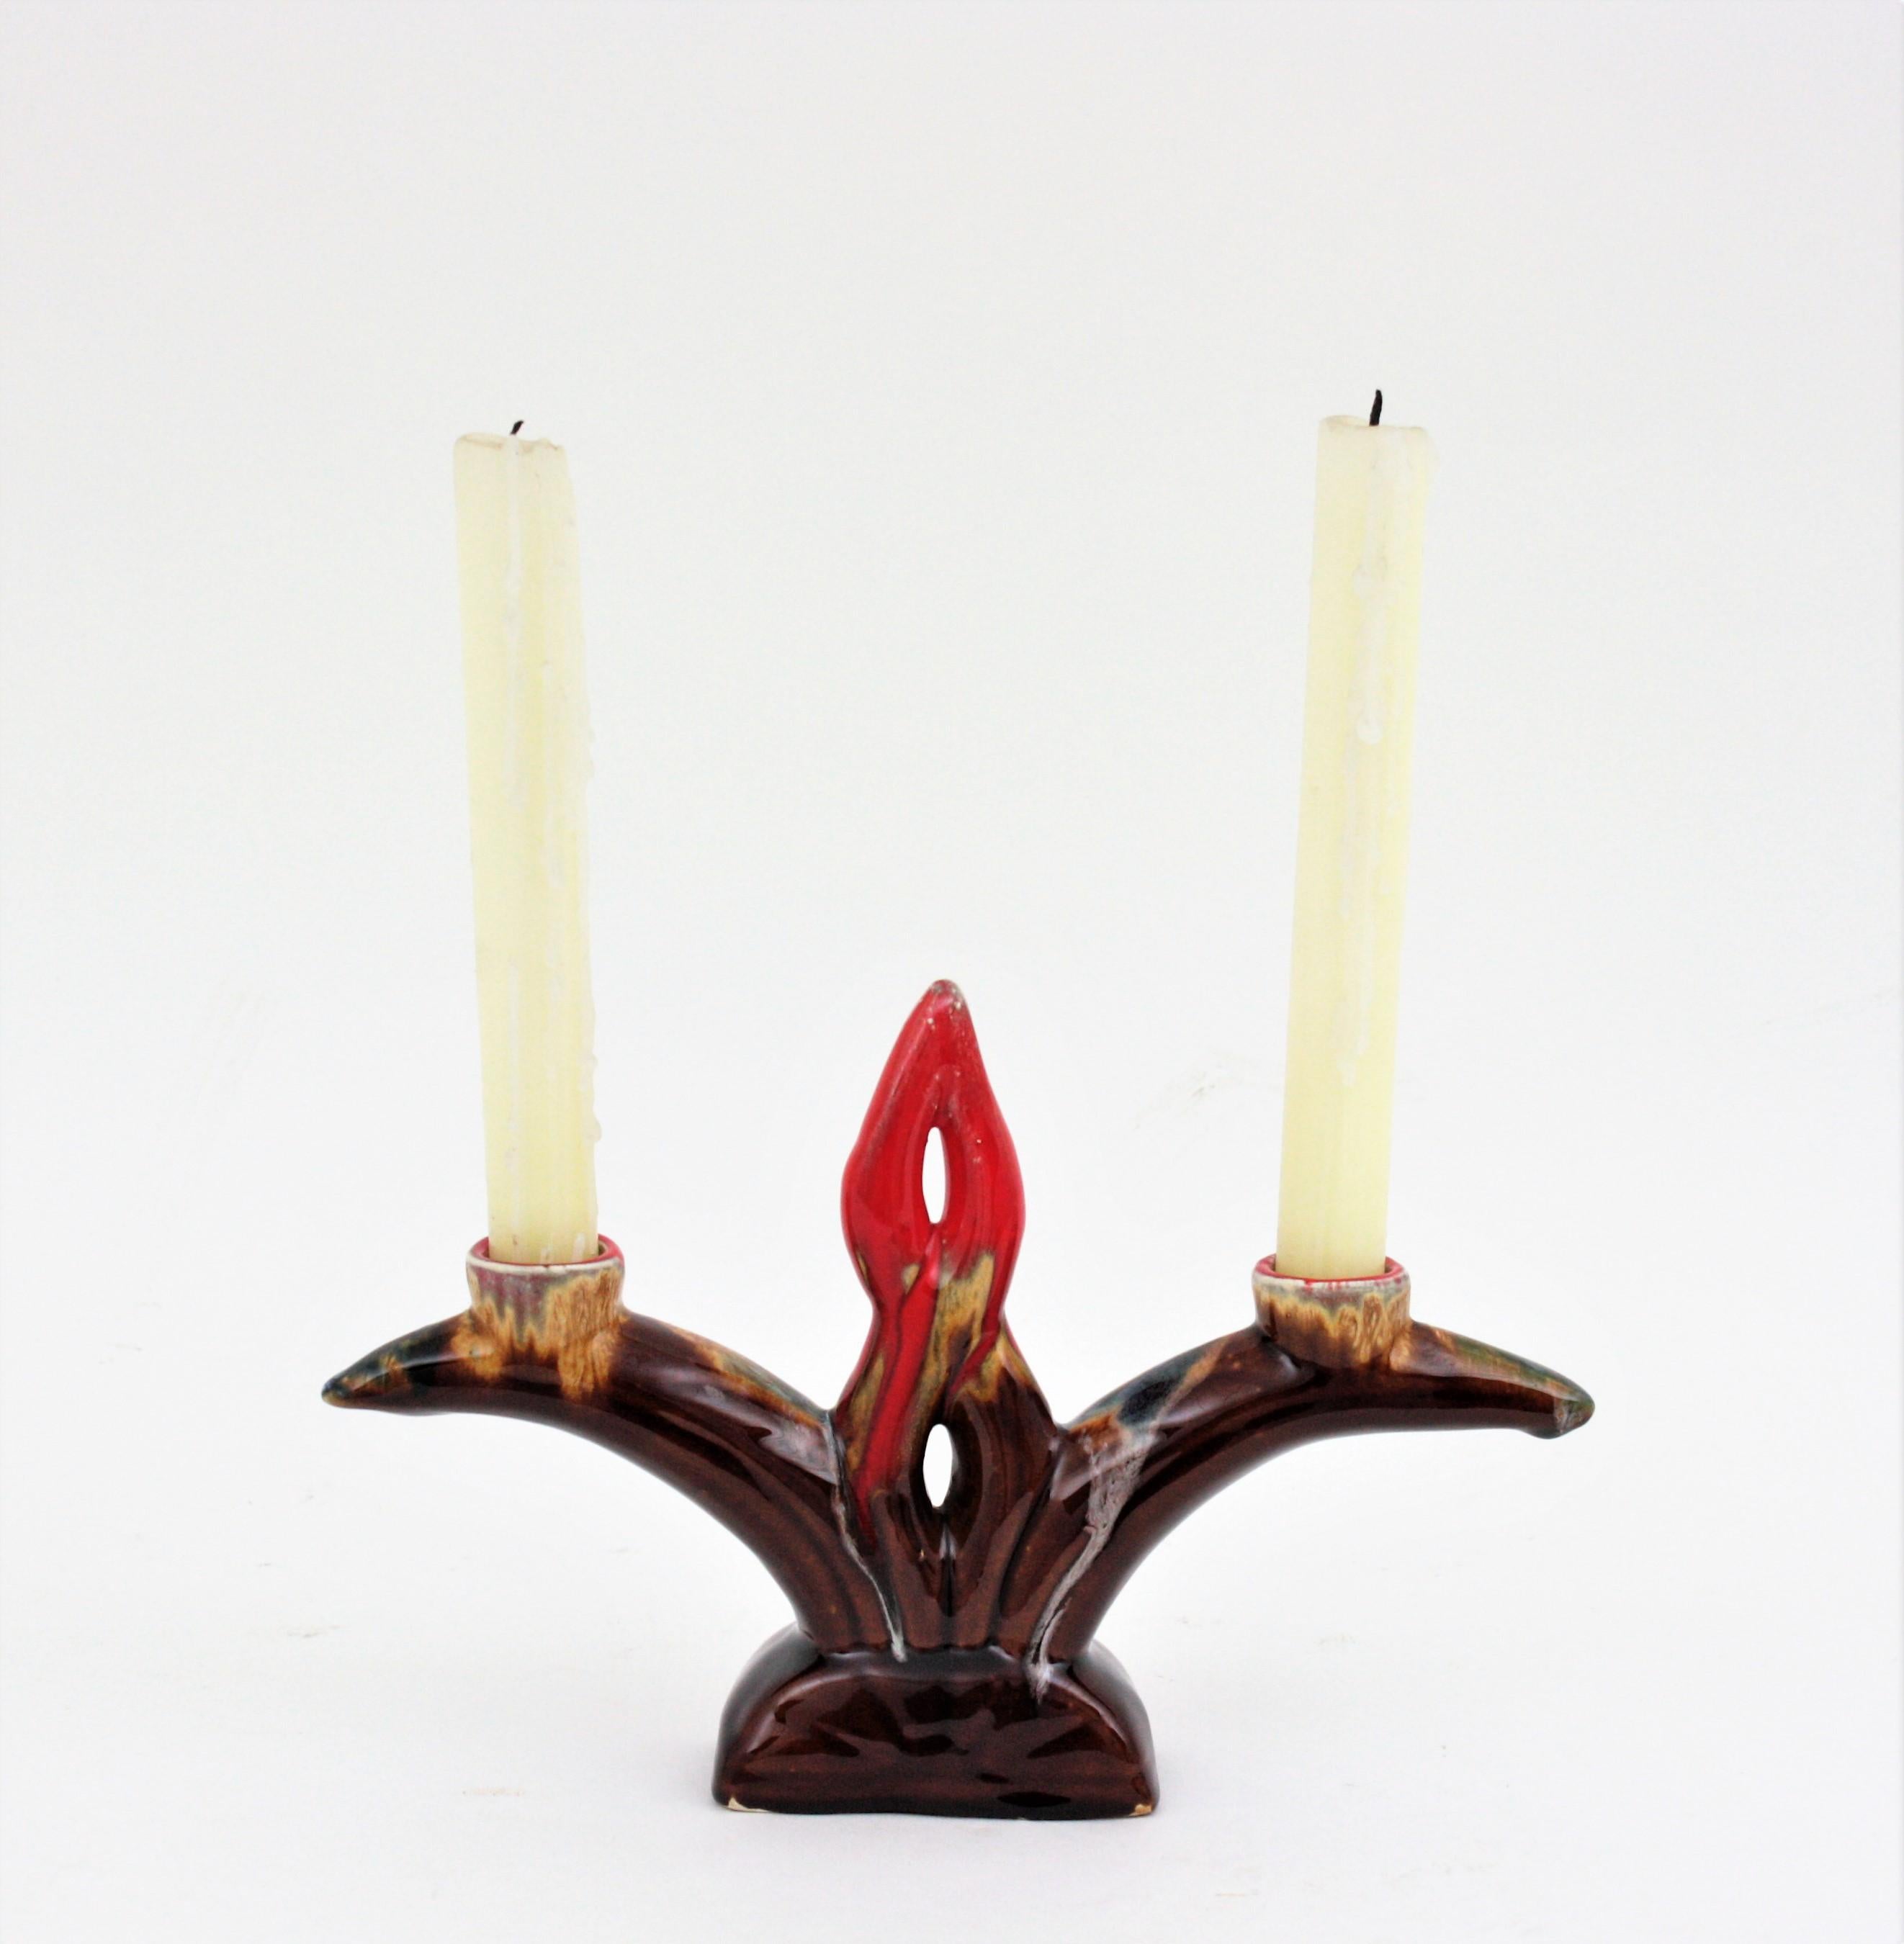 Kerzenhalter aus glasierter Keramik von Vallauris, Frankreich, 1950-1960er Jahre
Schöner Kerzenhalter für zwei Kerzen aus fetter, glasierter Lava-Keramik. 
Schöne Farben: Brauntöne mit weißen und roten Akzenten.
Ausgezeichneter Vintage-Zustand
Tolle